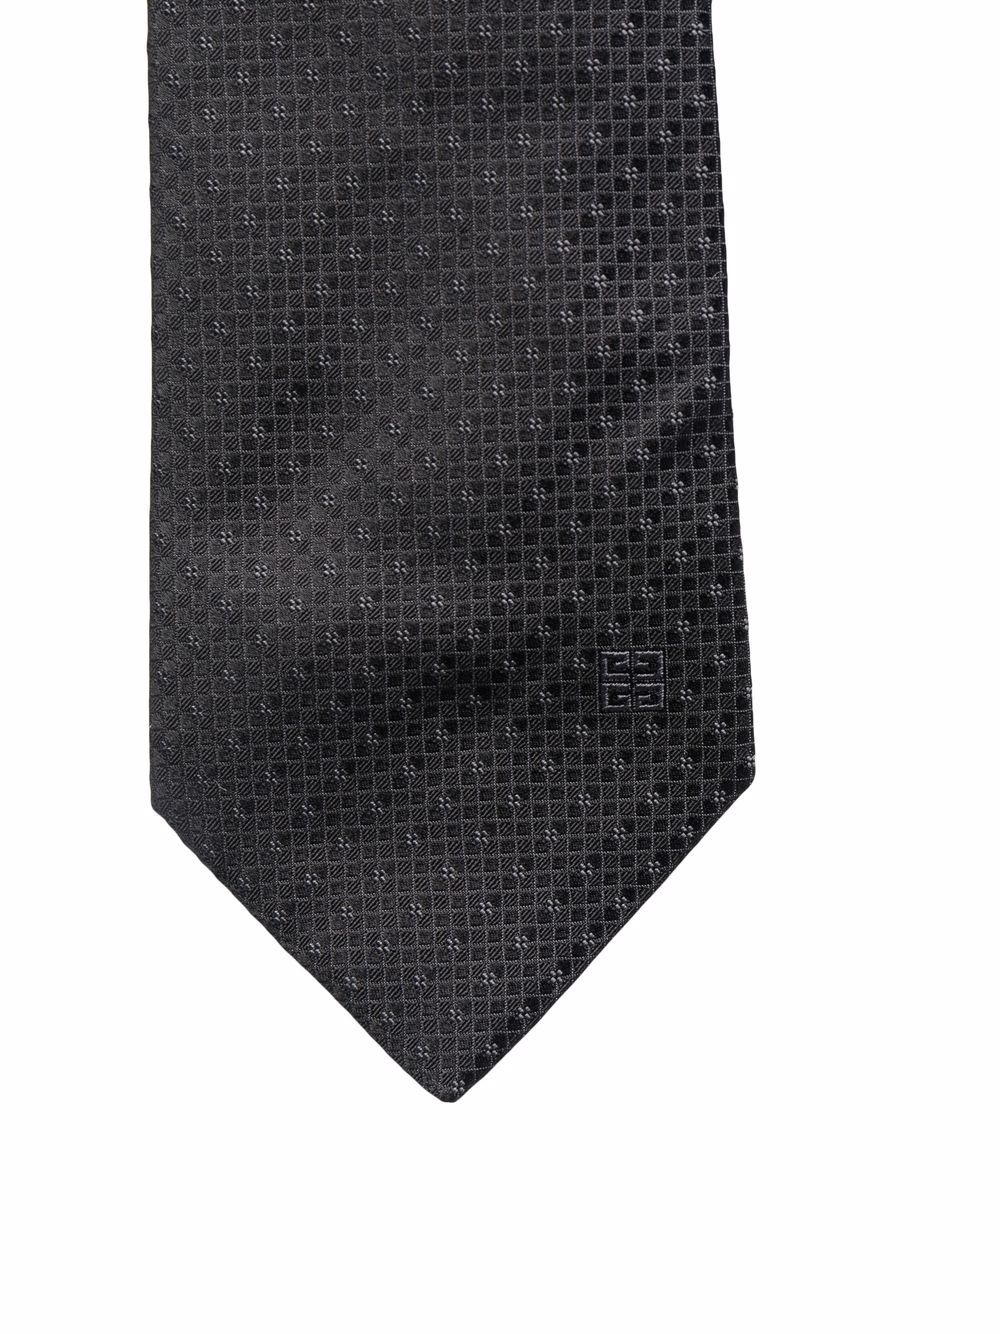 фото Givenchy шелковый галстук с вышитым логотипом 4g